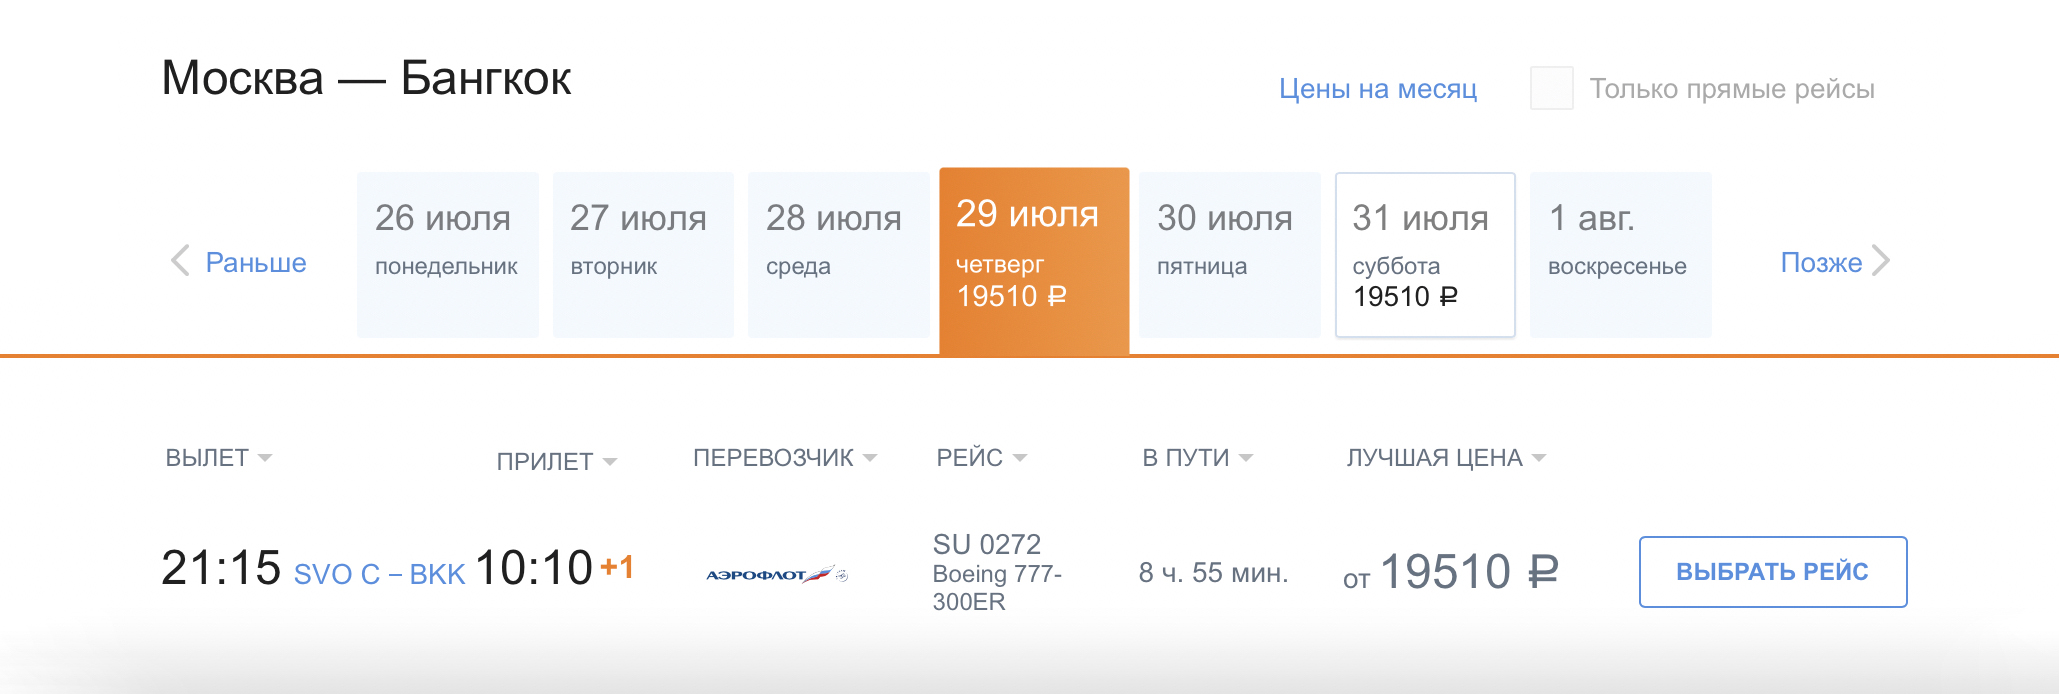 Россия не возобновила авиасообщение с Таиландом на момент публикации статьи. Рейс «Аэрофлота» в Бангкок — грузопассажирский